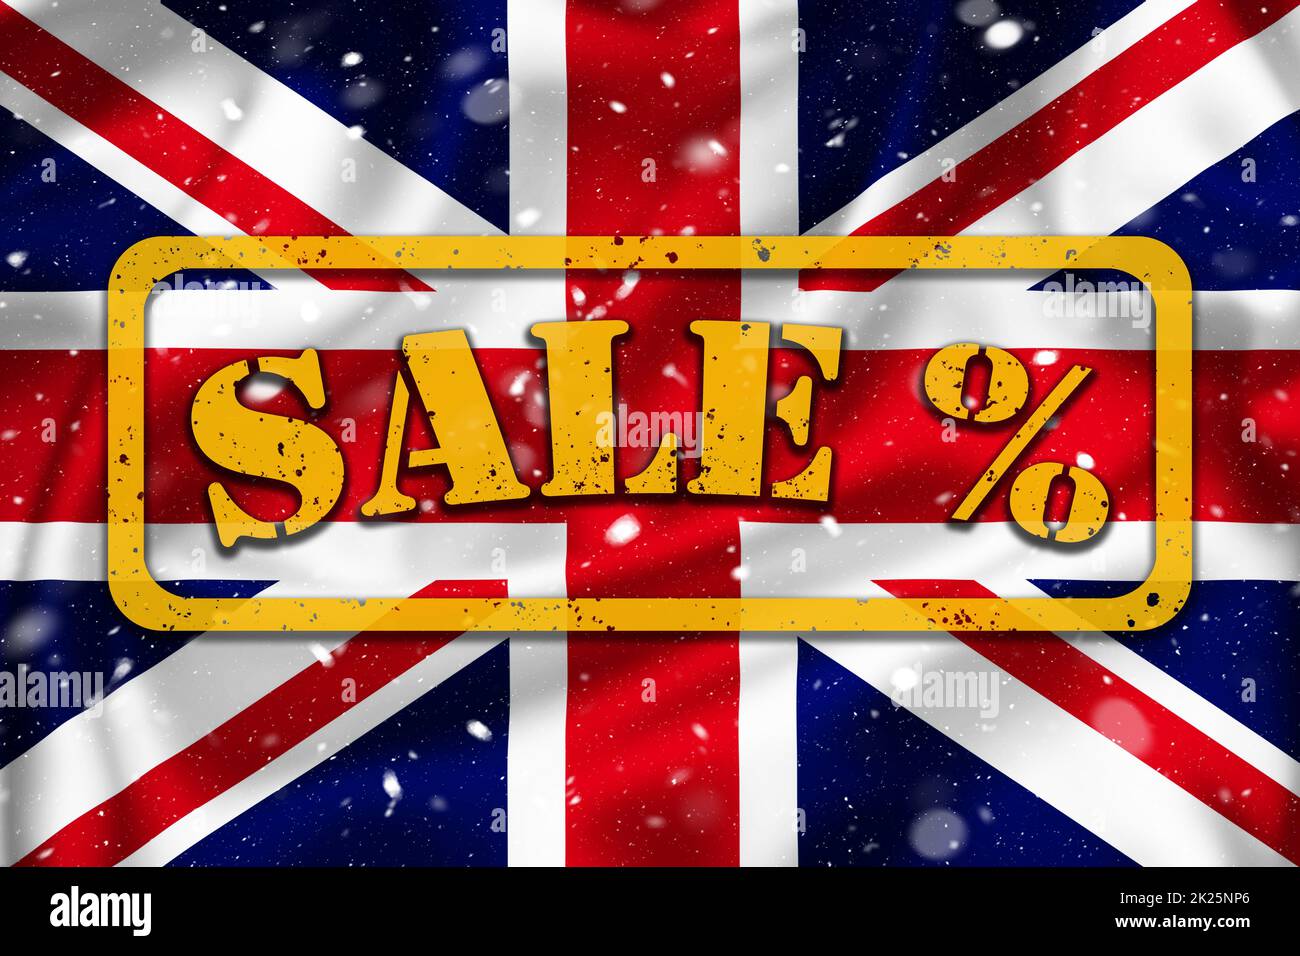 Ilustración de banners de venta de temporada en la bandera de Union Jack, temporada de compras en el Reino Unido Foto de stock